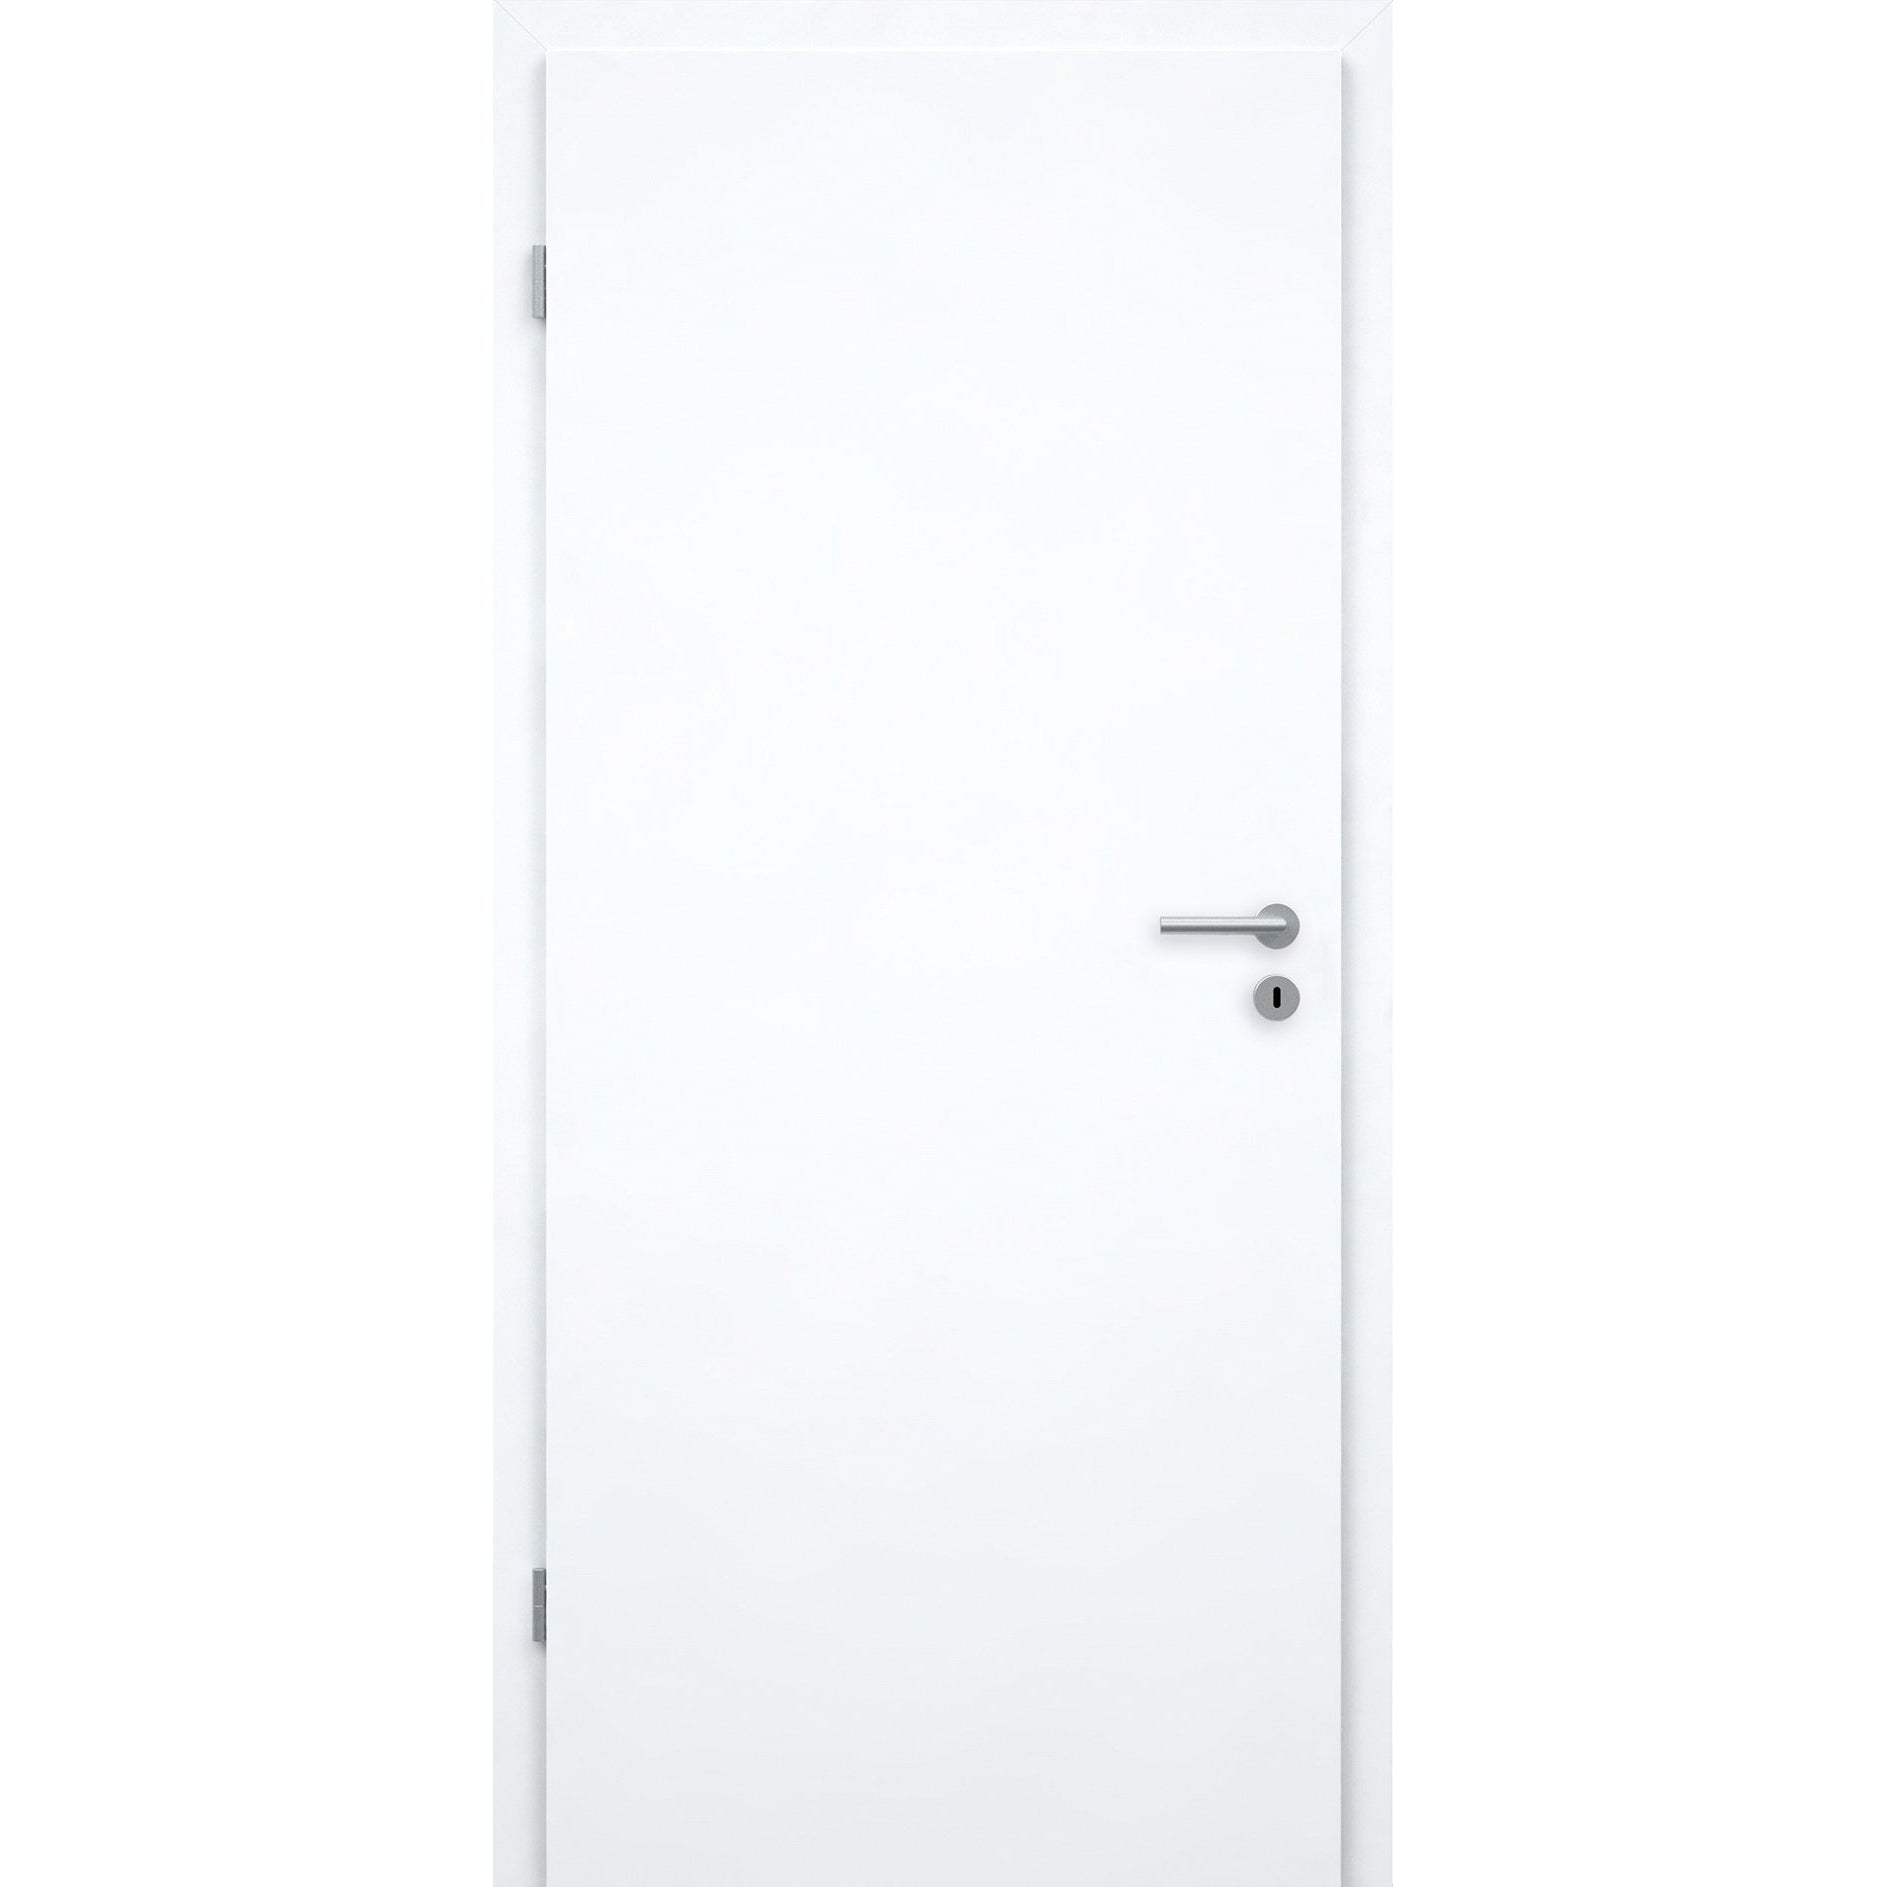 Wohnungseingangstür mit Zarge brillant-weiß Dekor glatt Designkante SK1 / KK3